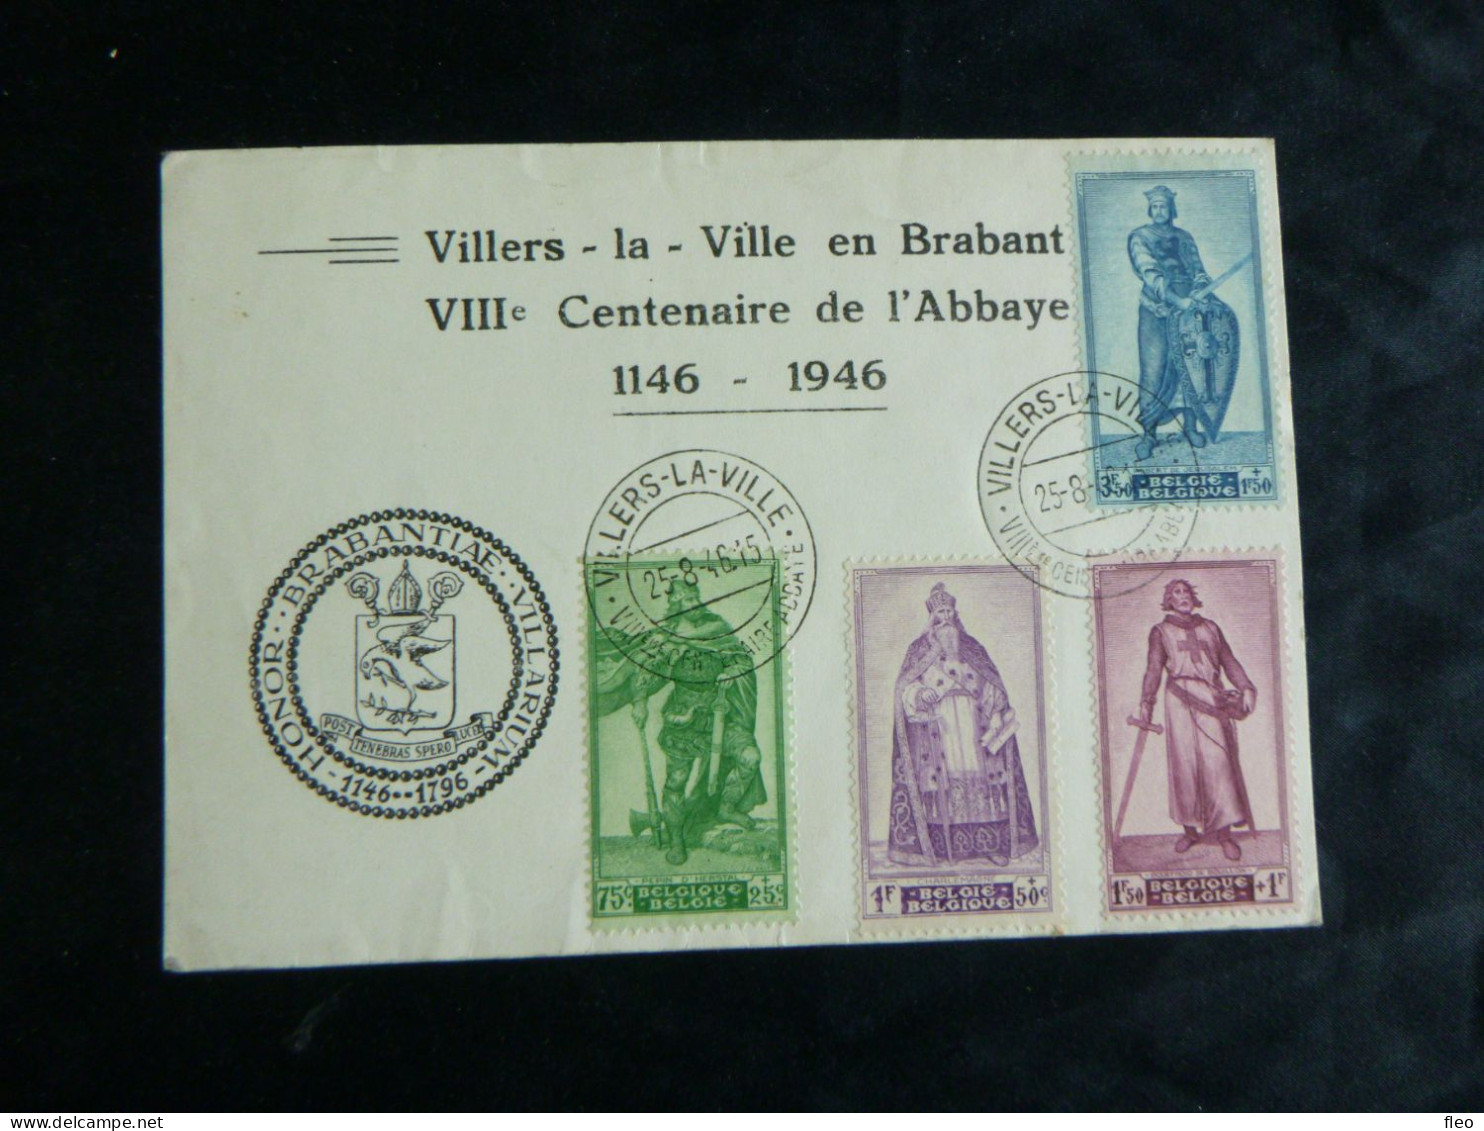 1946 737/740 Carte Souvenir Villers La Ville En Brabant 1146/1946 - Documents Commémoratifs